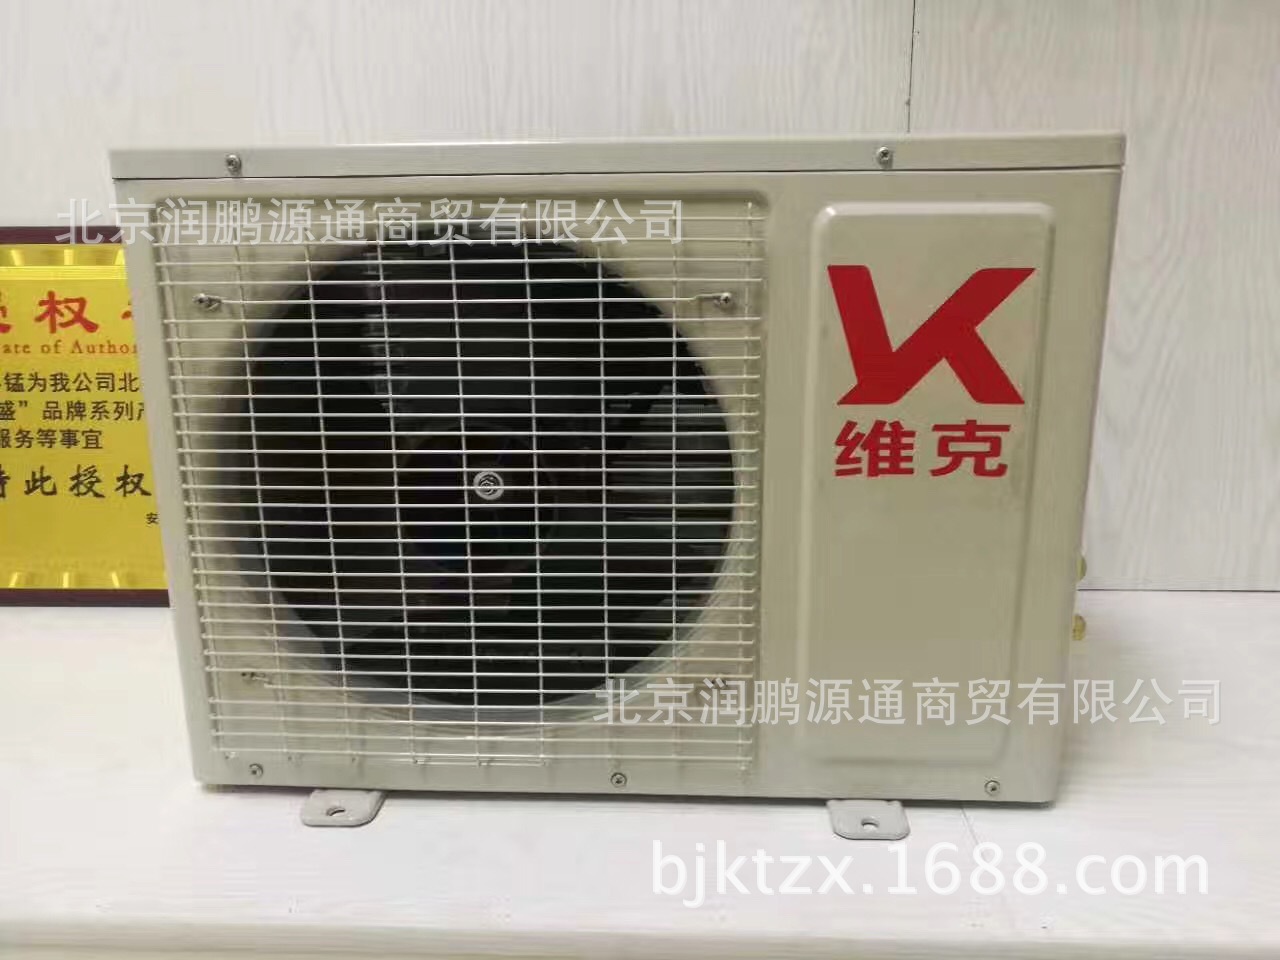 厂家直销KFR-25GW/DY-770一诺维克空调 定频壁挂式空调一件代示例图5